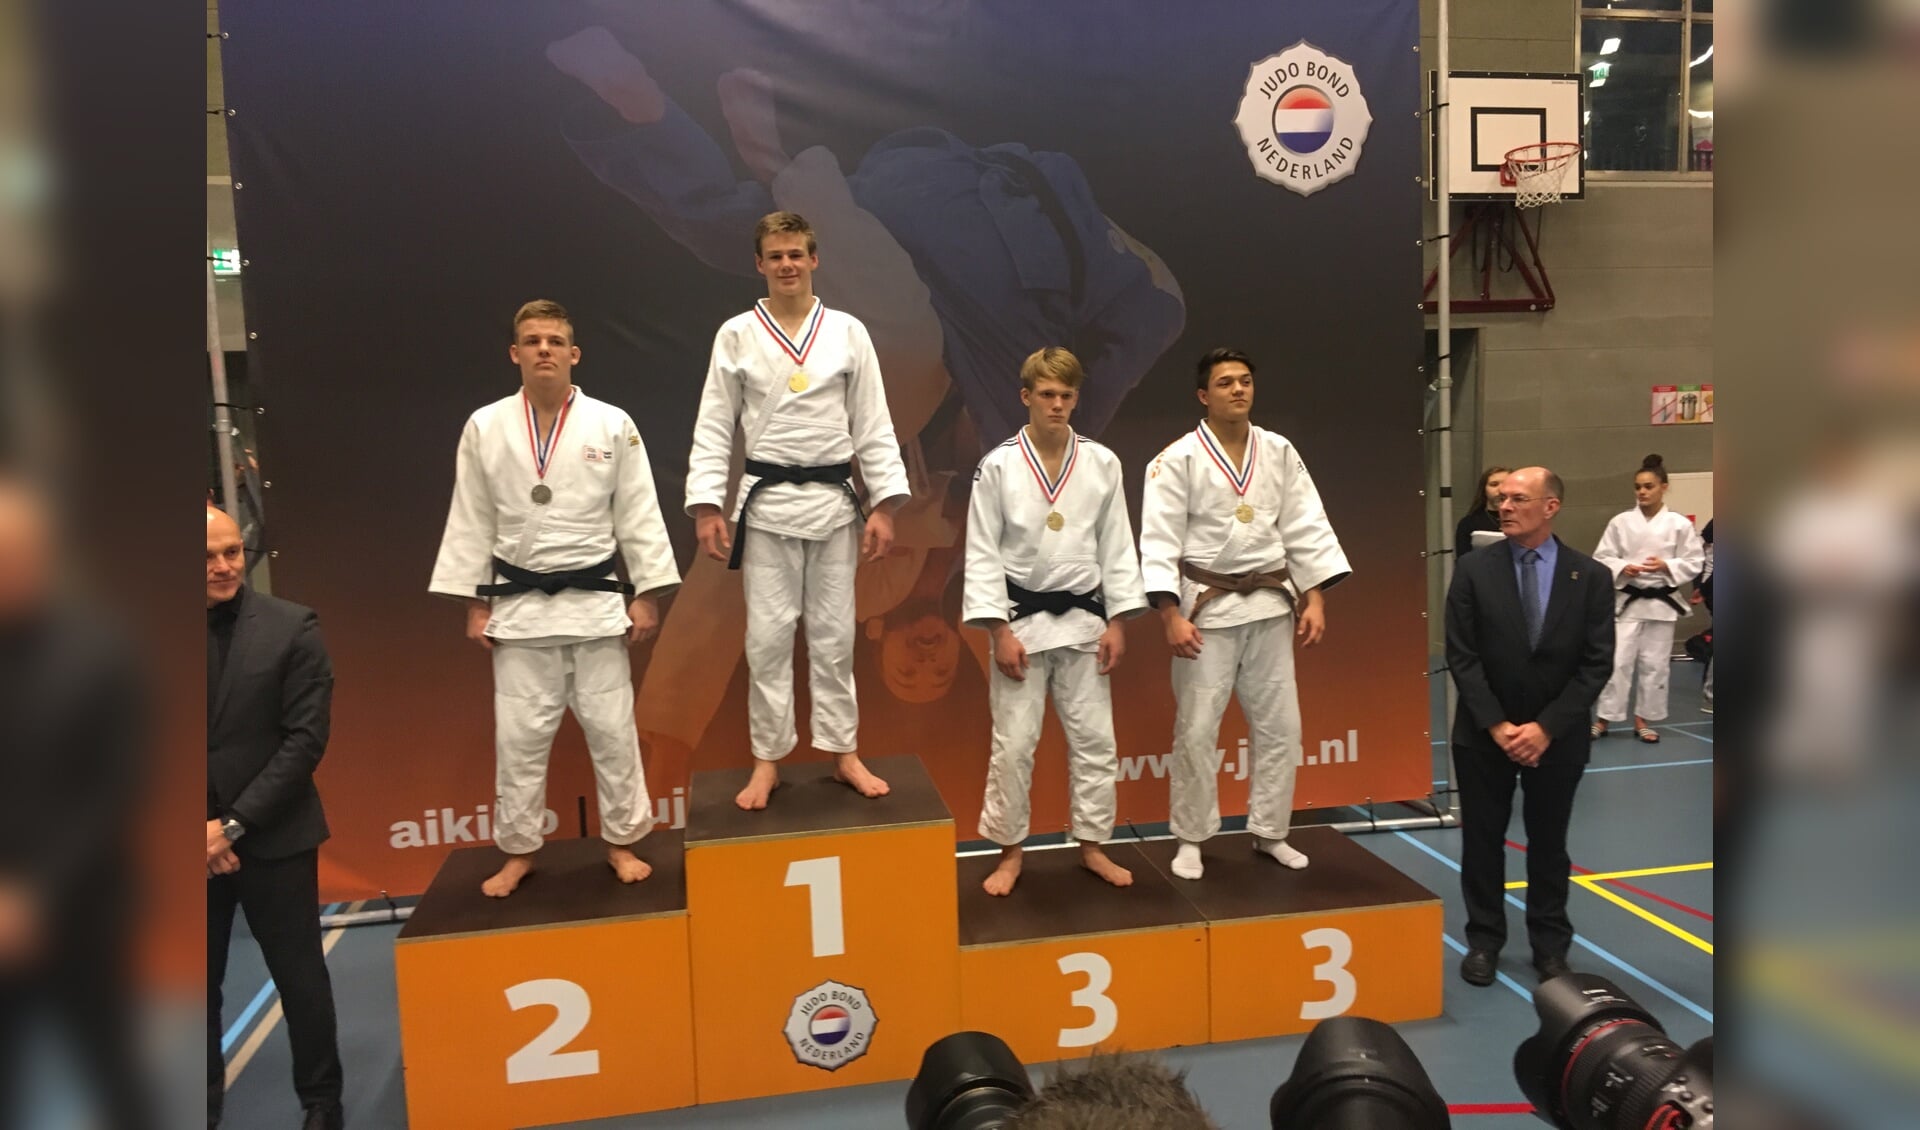 Tigo Renes als Nederlands judokampioen op de hoogste trede van het podium in Tilburg